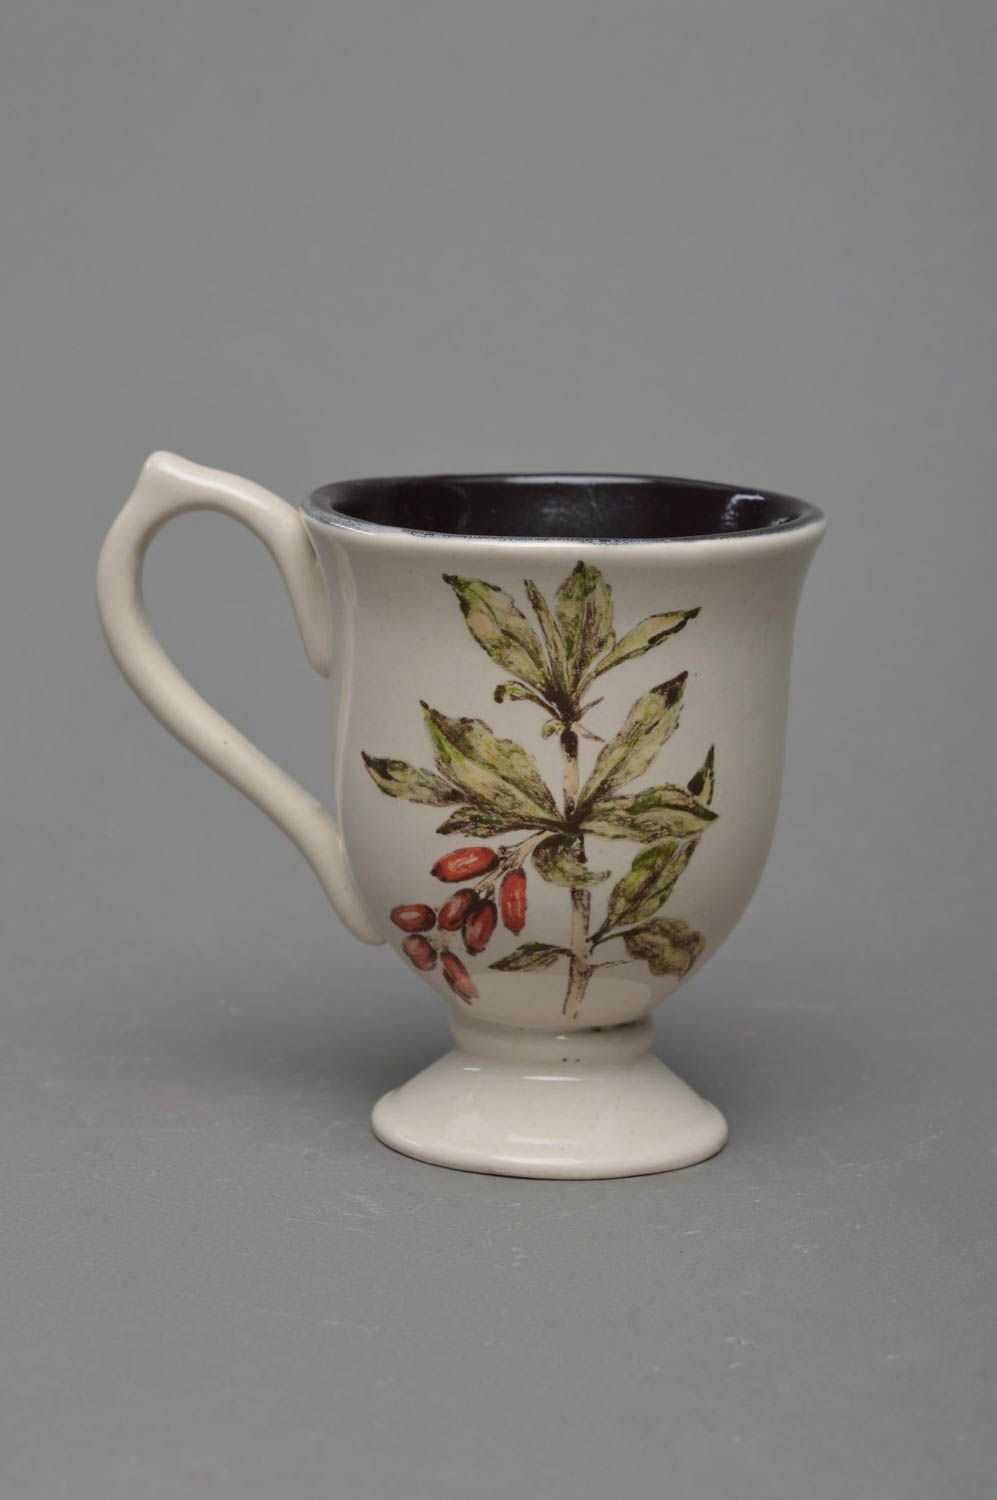 Tasse originale claire avec dessin de berbéris faite main en porcelaine photo 1